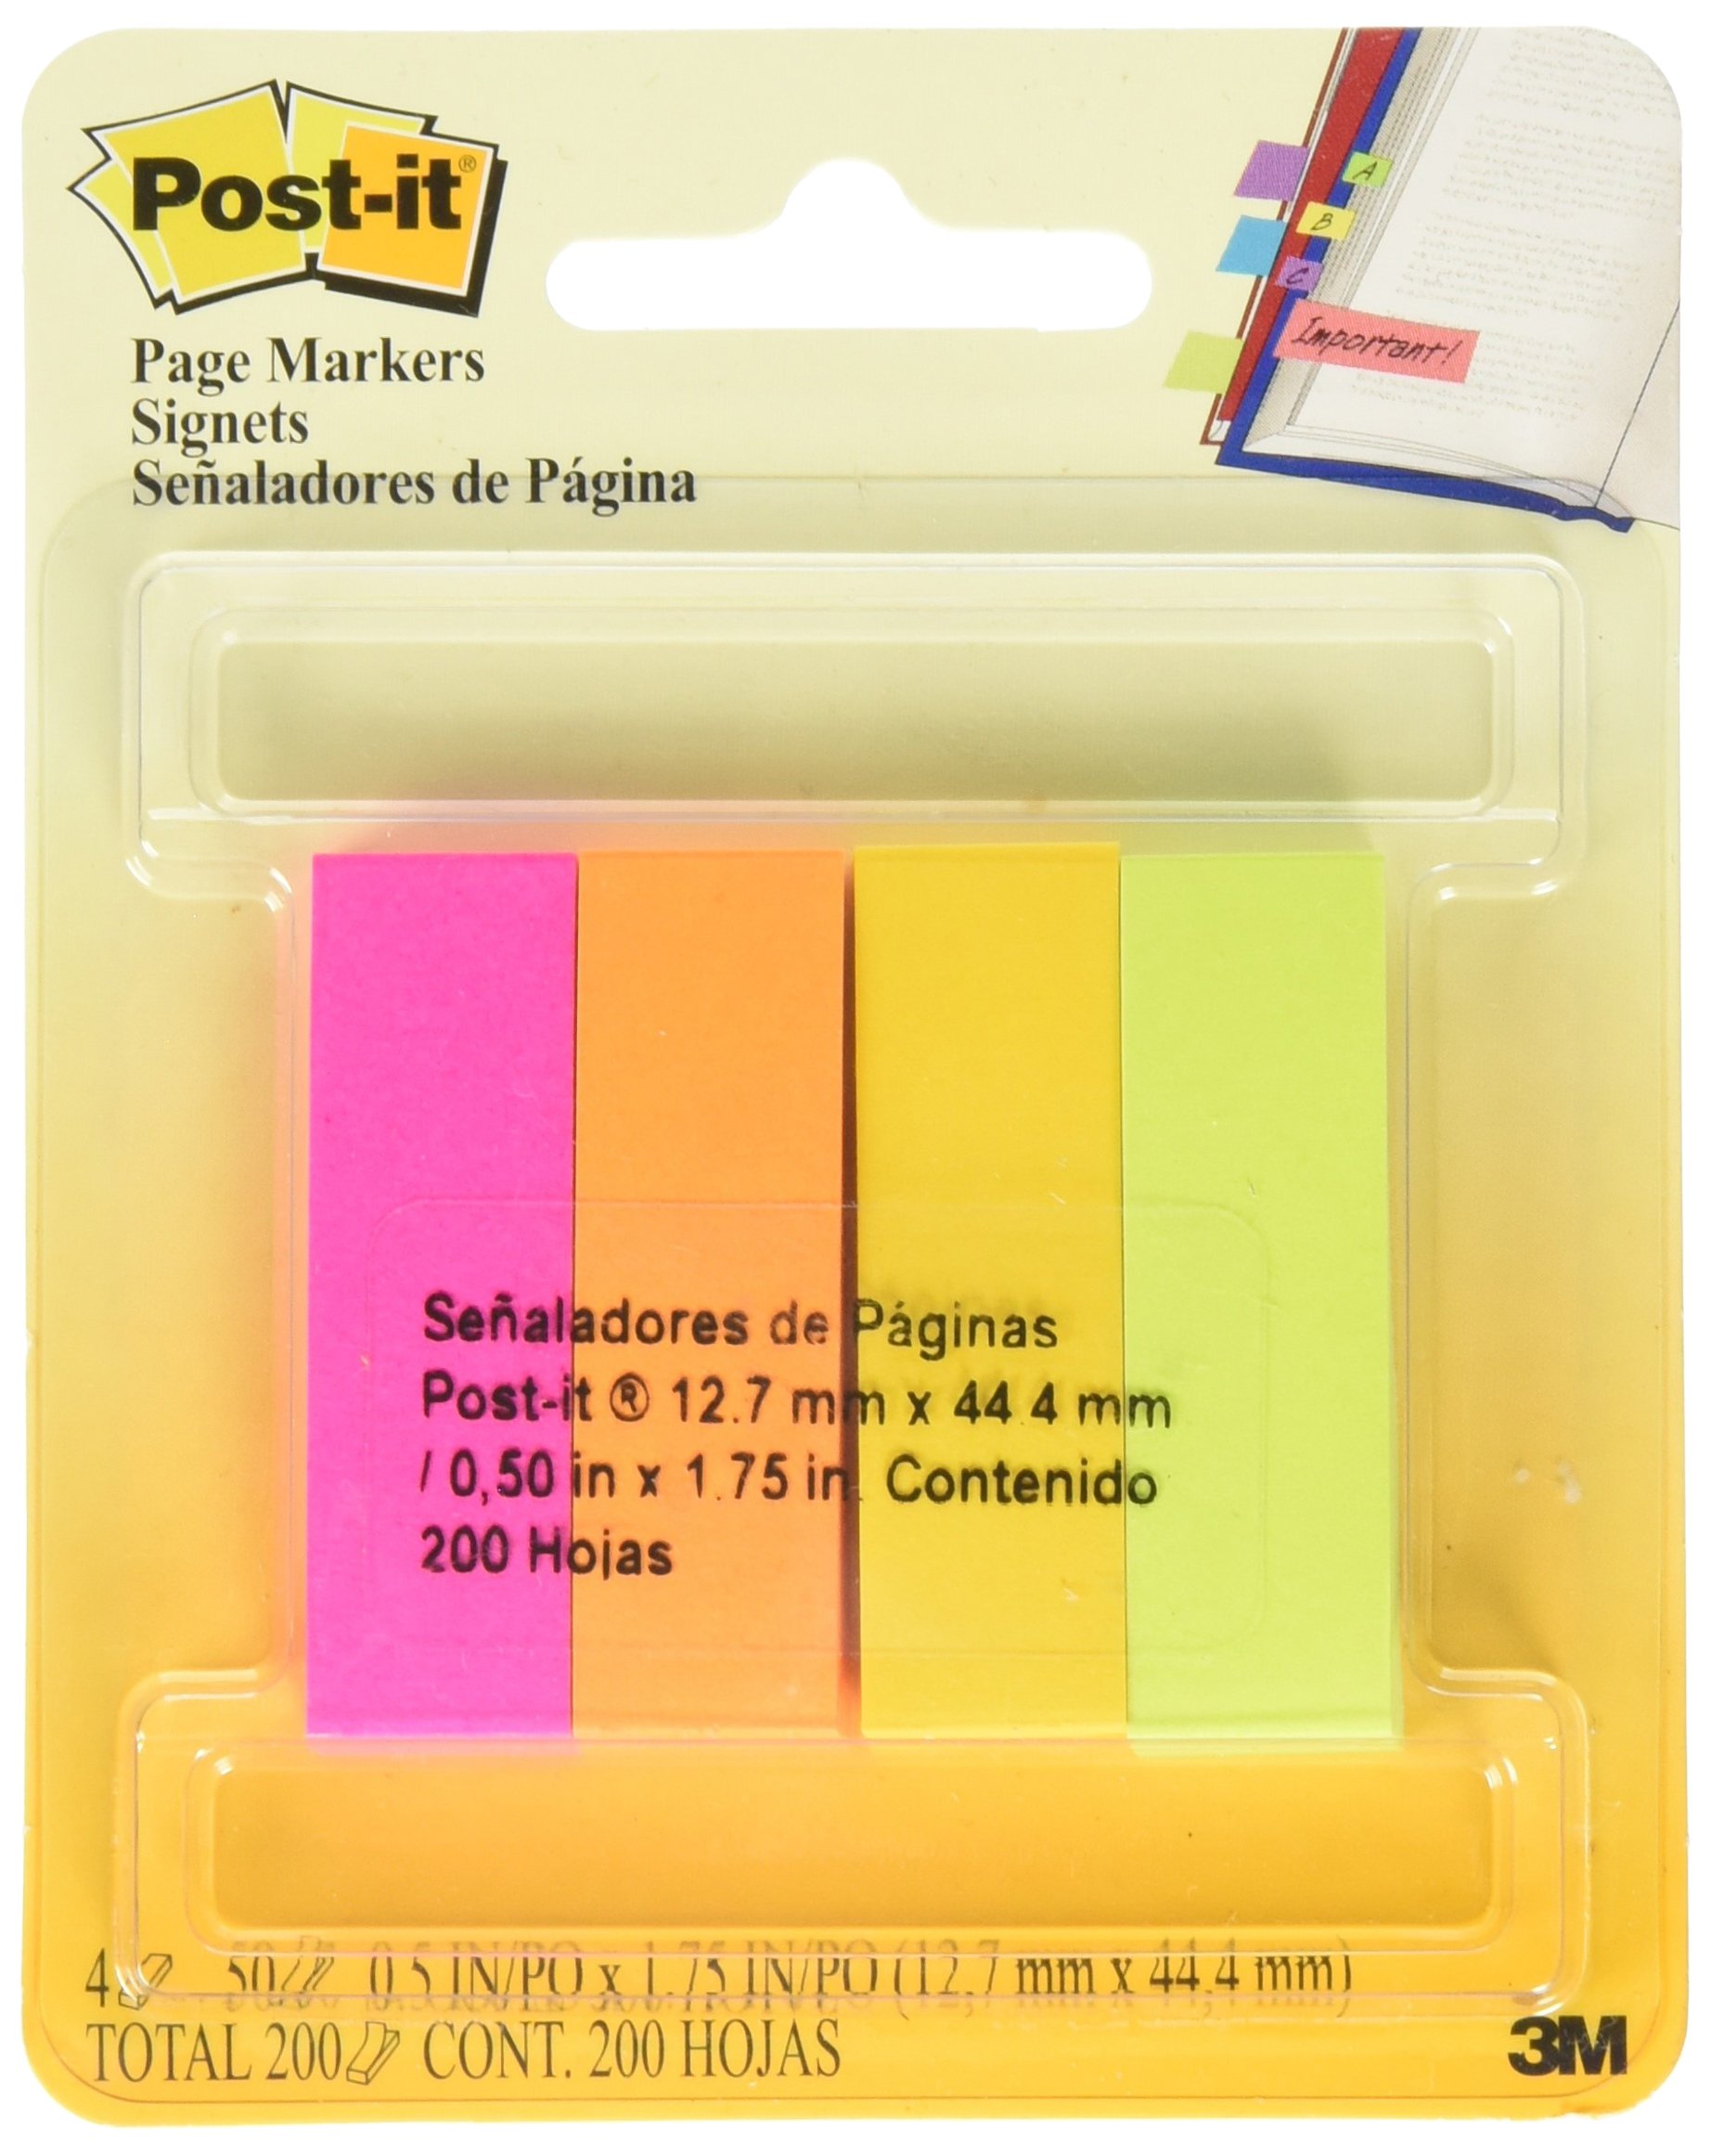 Señaladores Mod. 670-5af Post-it 3M 5 co Marcadores de pagina  de papel 5 blocks de diferente color tonos neon, con 50 señaladores c/u (250 total), medidas: 1.27 cm x 4.45 cm - MT900179409